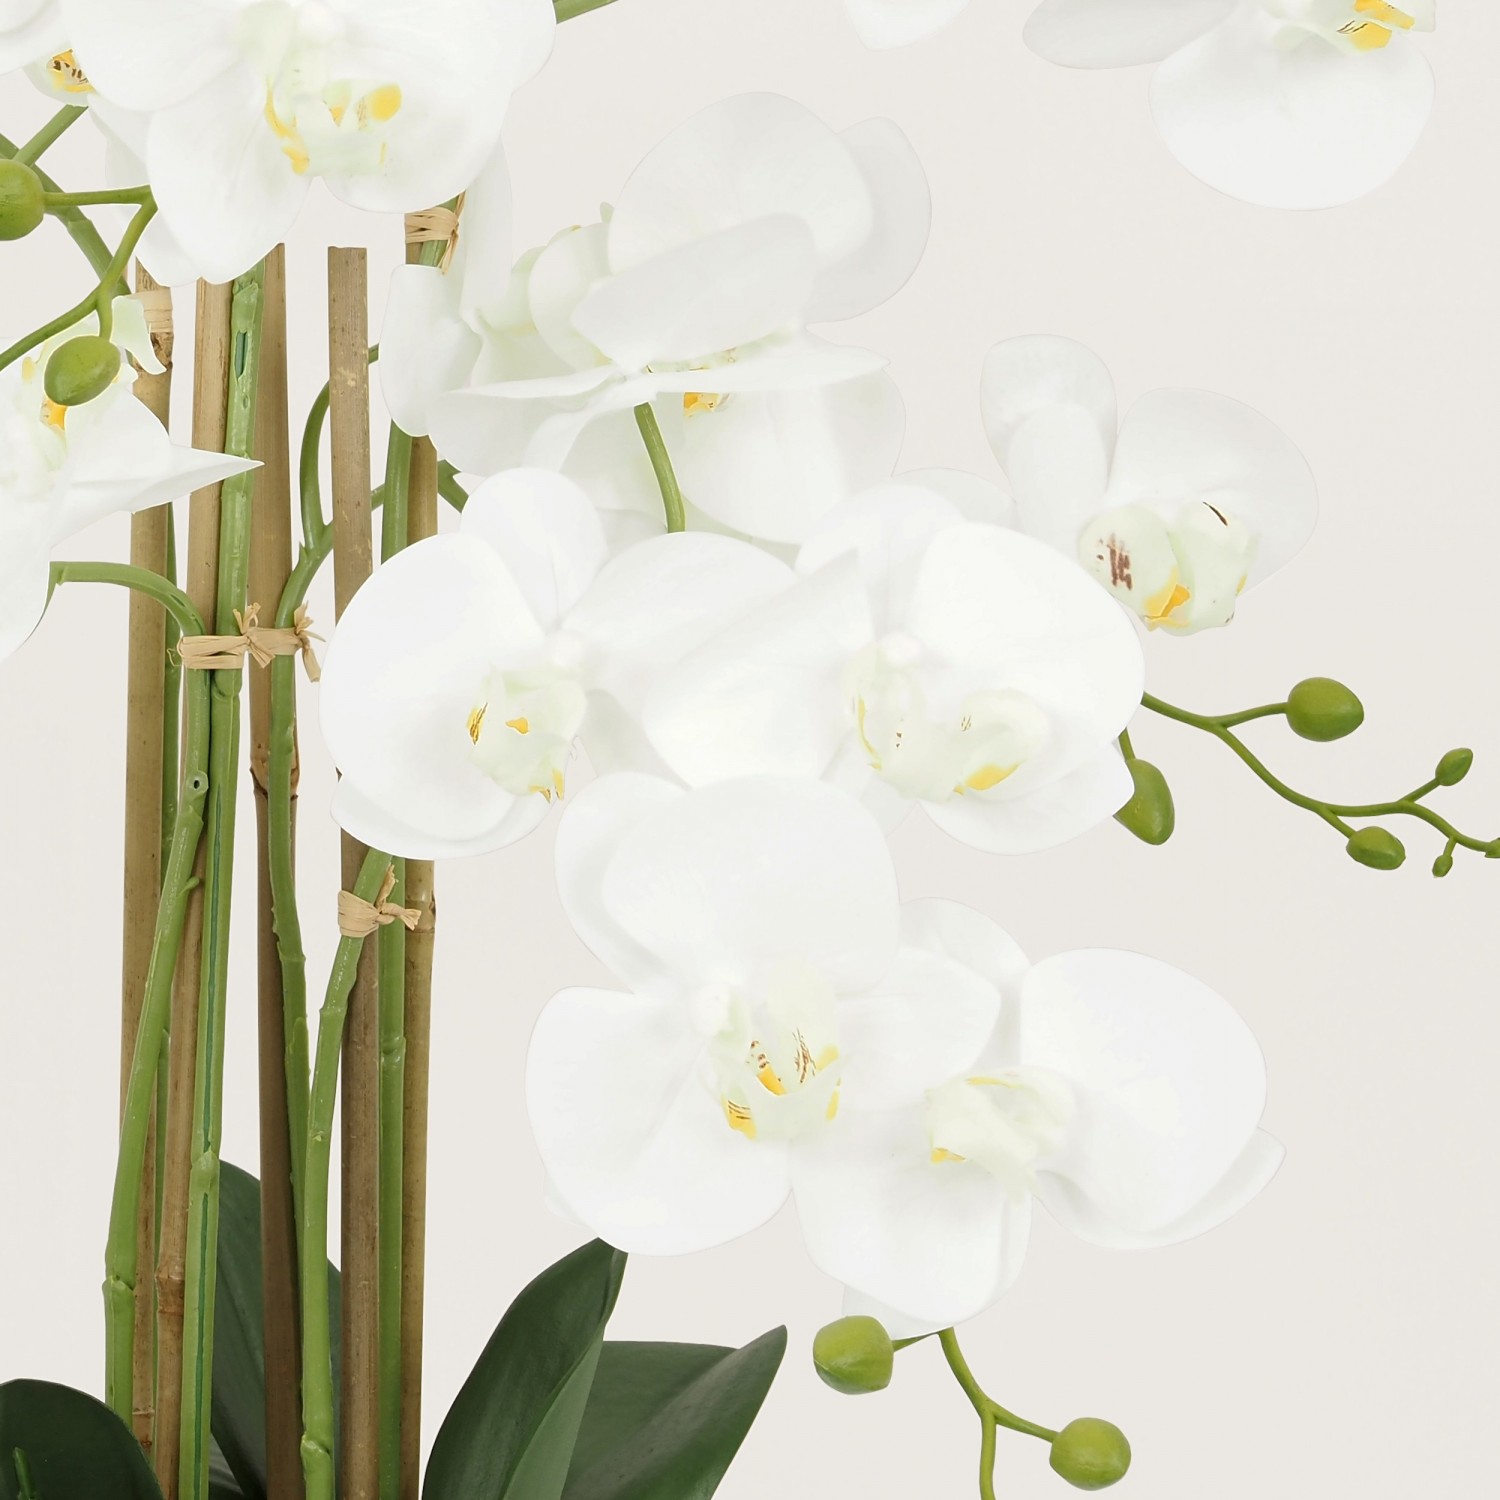 Plante Fleur Artificielle Orchidée Toucher Naturel, Pot Céramique, H.55cm | SPARO